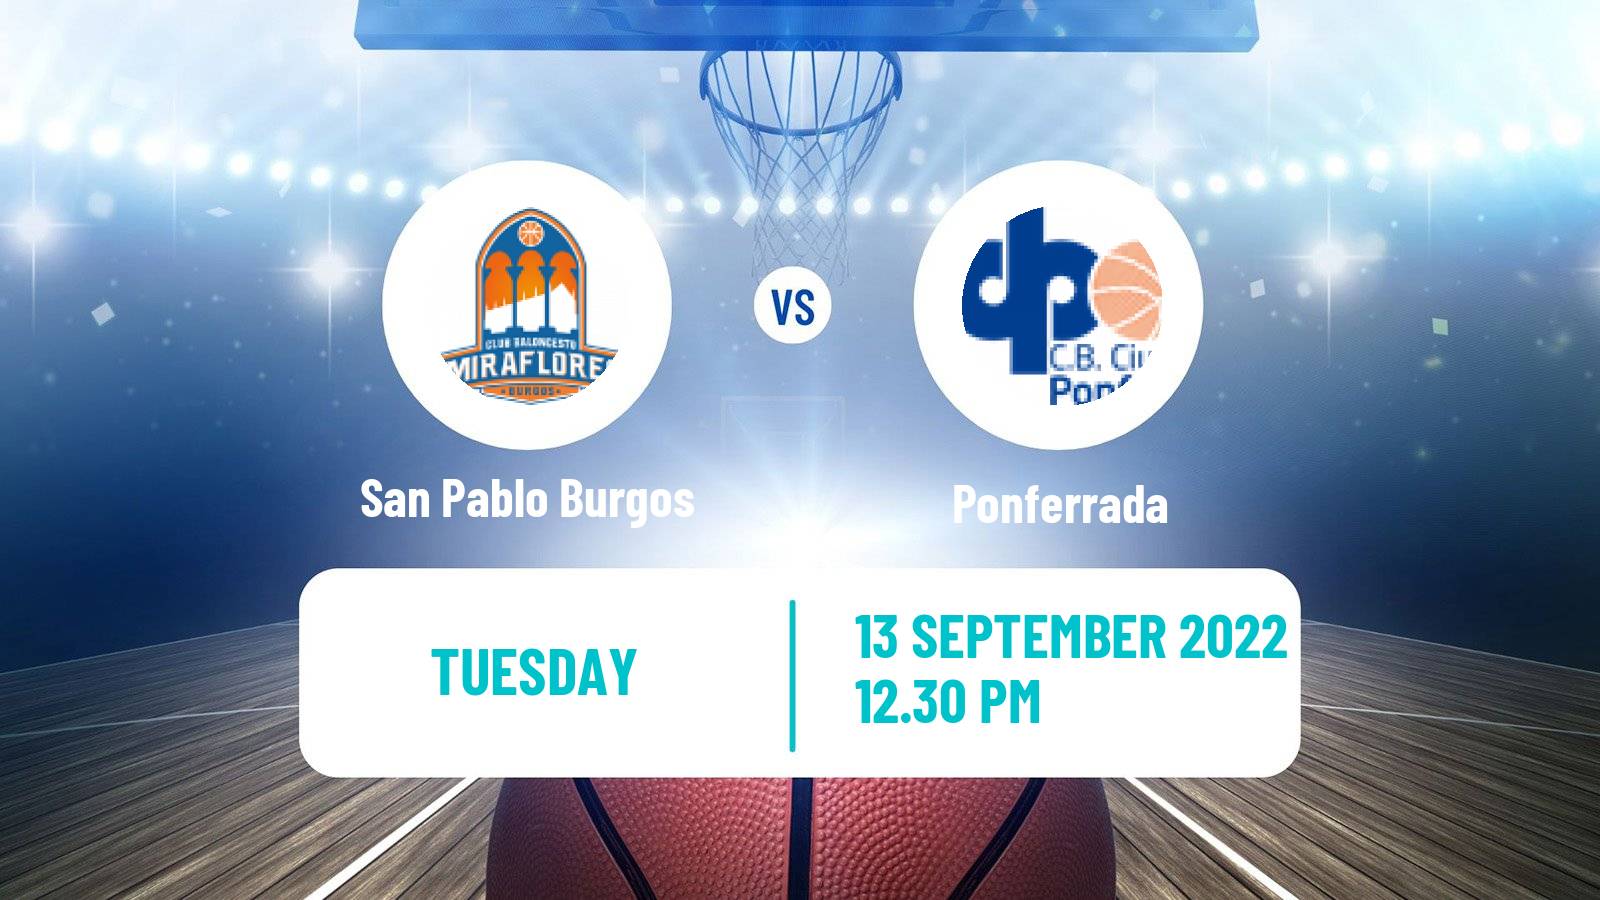 Basketball Club Friendly Basketball San Pablo Burgos - Ponferrada